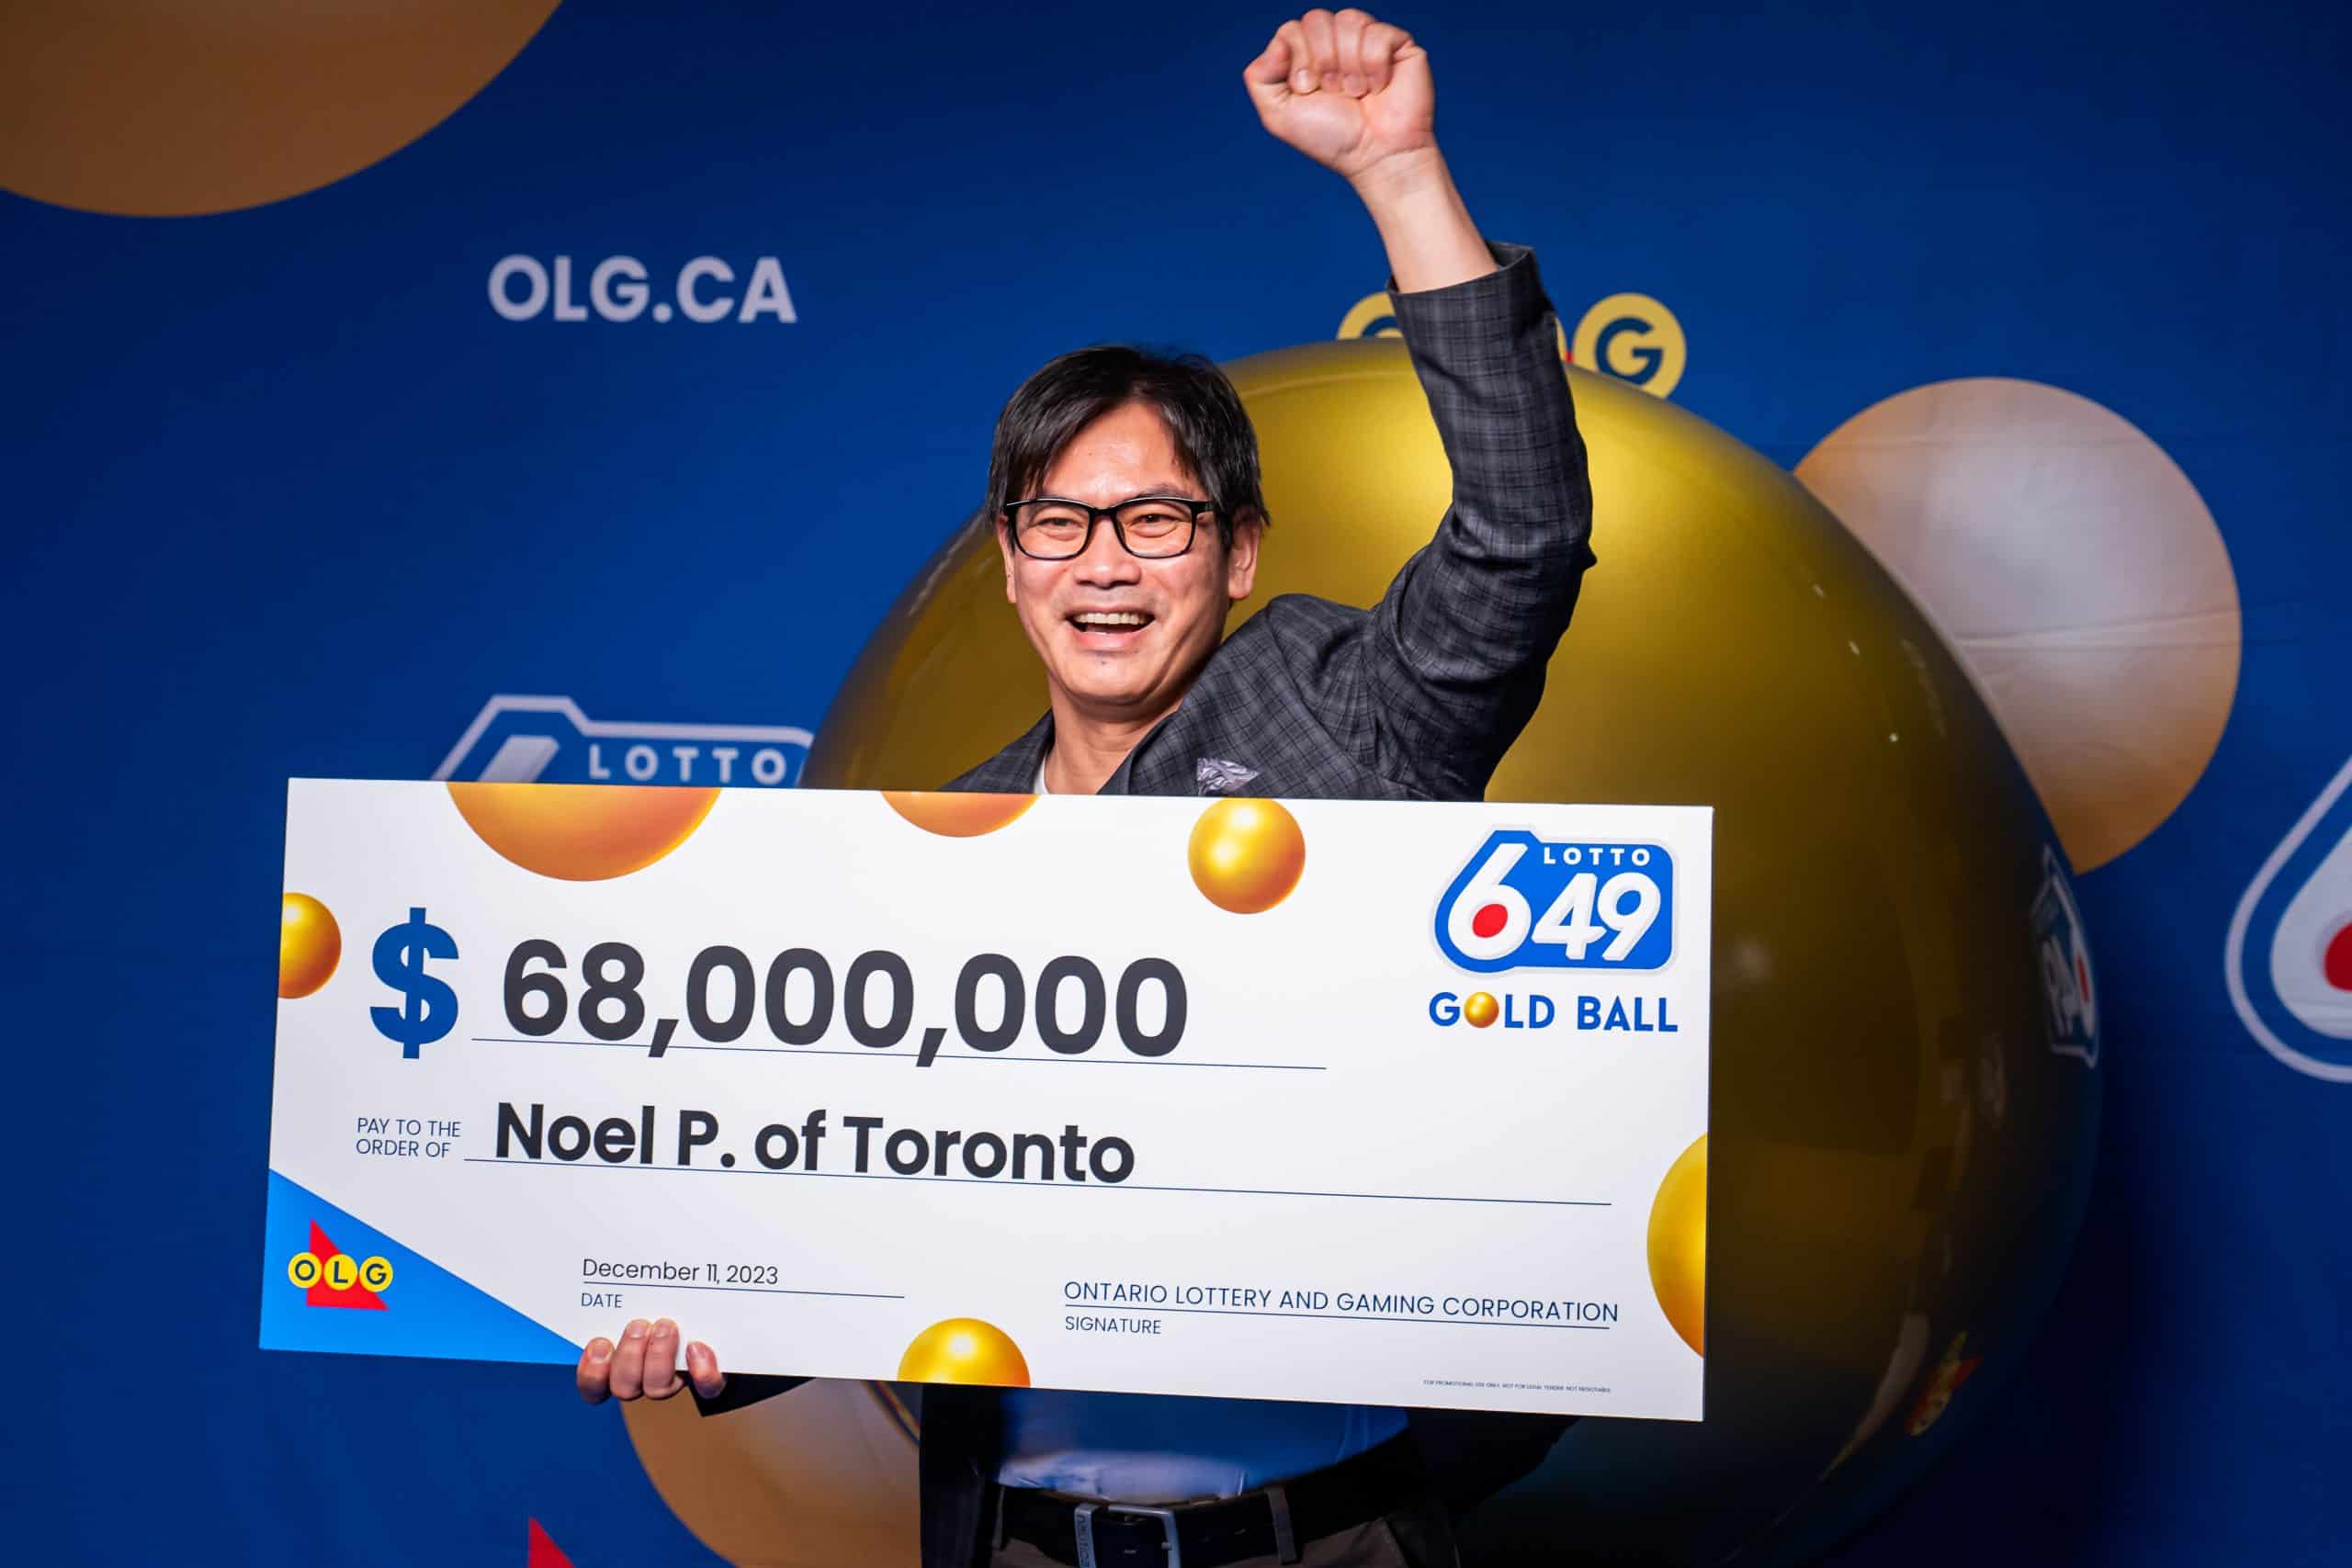 toronto man wins record breaking lotto jackpot $68 million